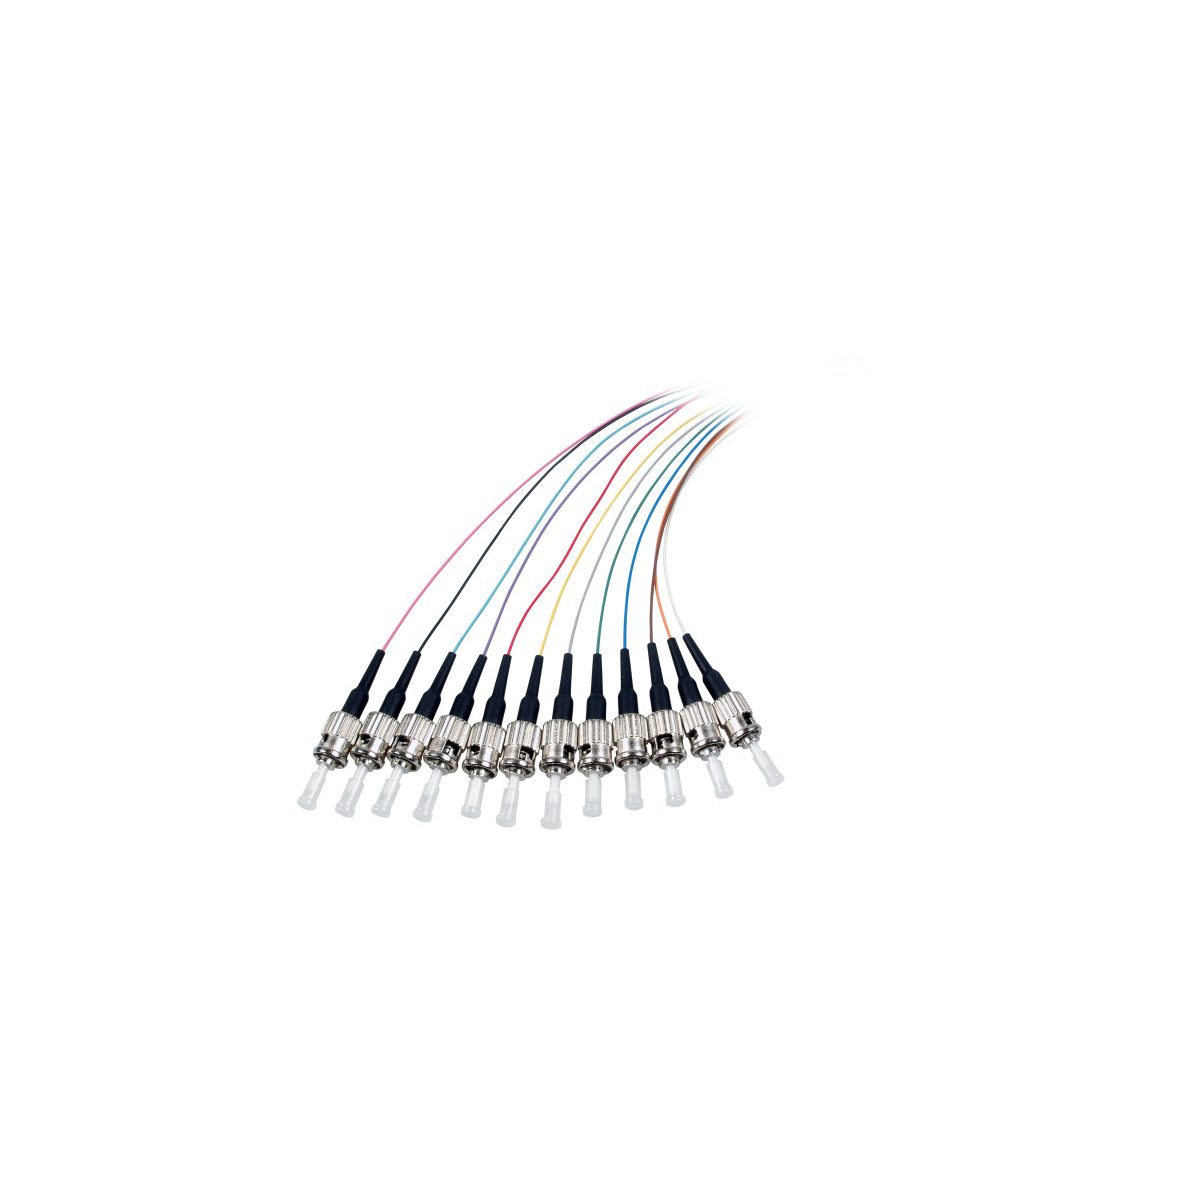 COMMUNIK Kabel Pigtails / Glasfaserkabel, Faserpigtail, m 2 ST